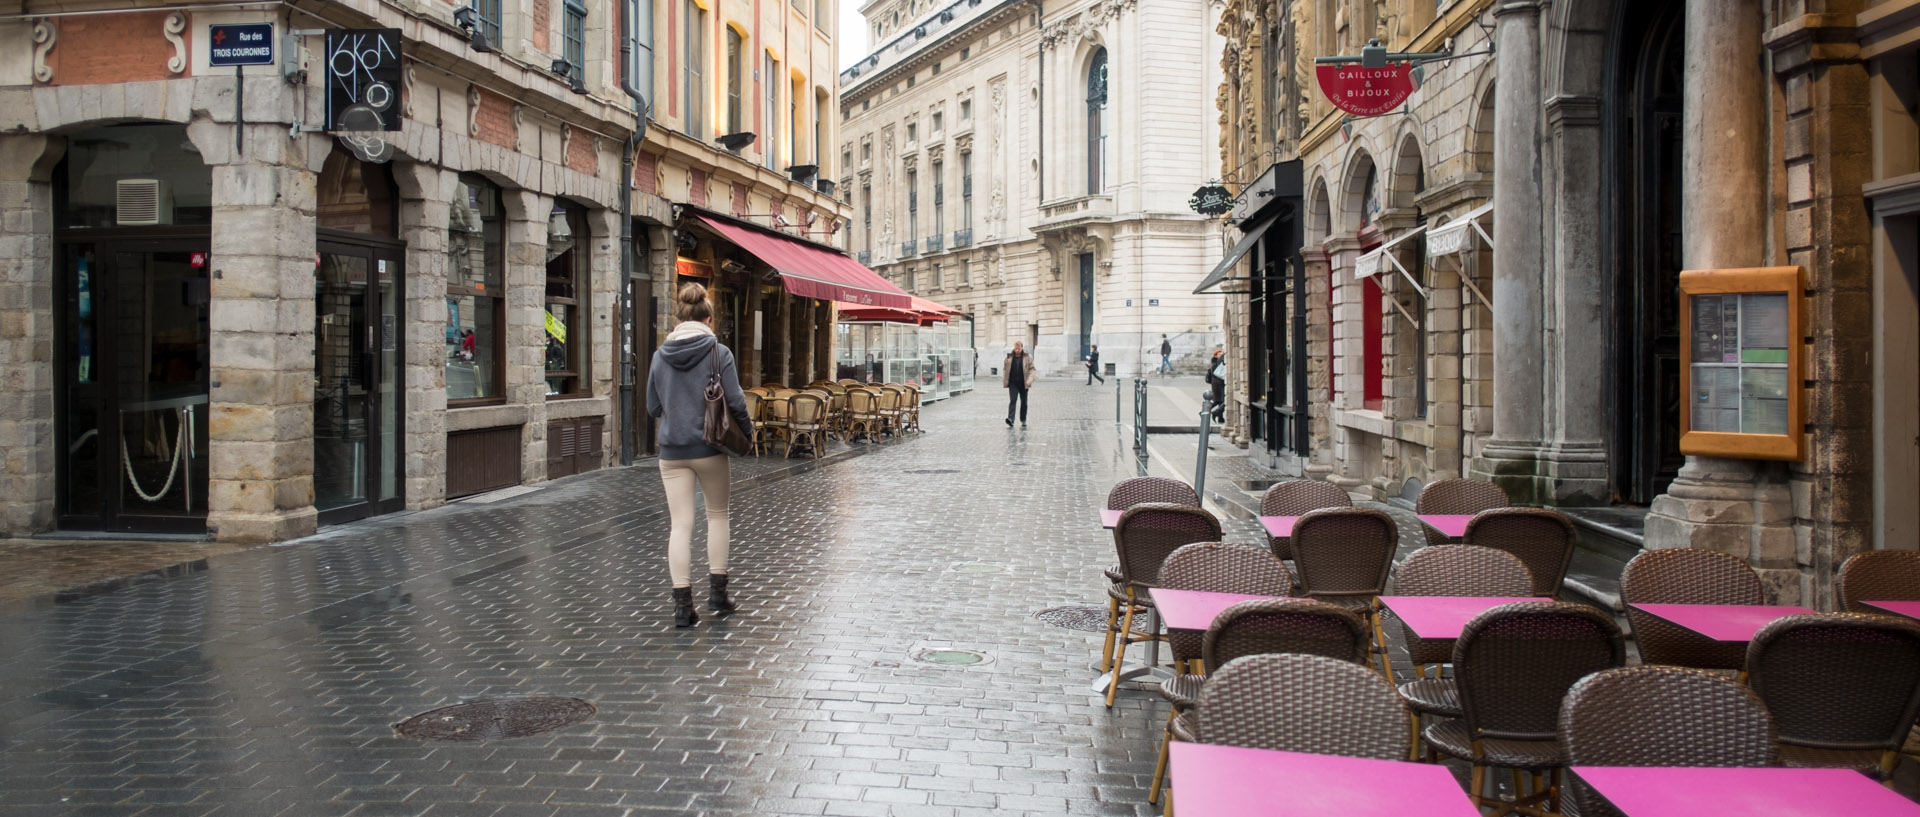 La rue des Sept Agaches sous la pluie, à Lille.